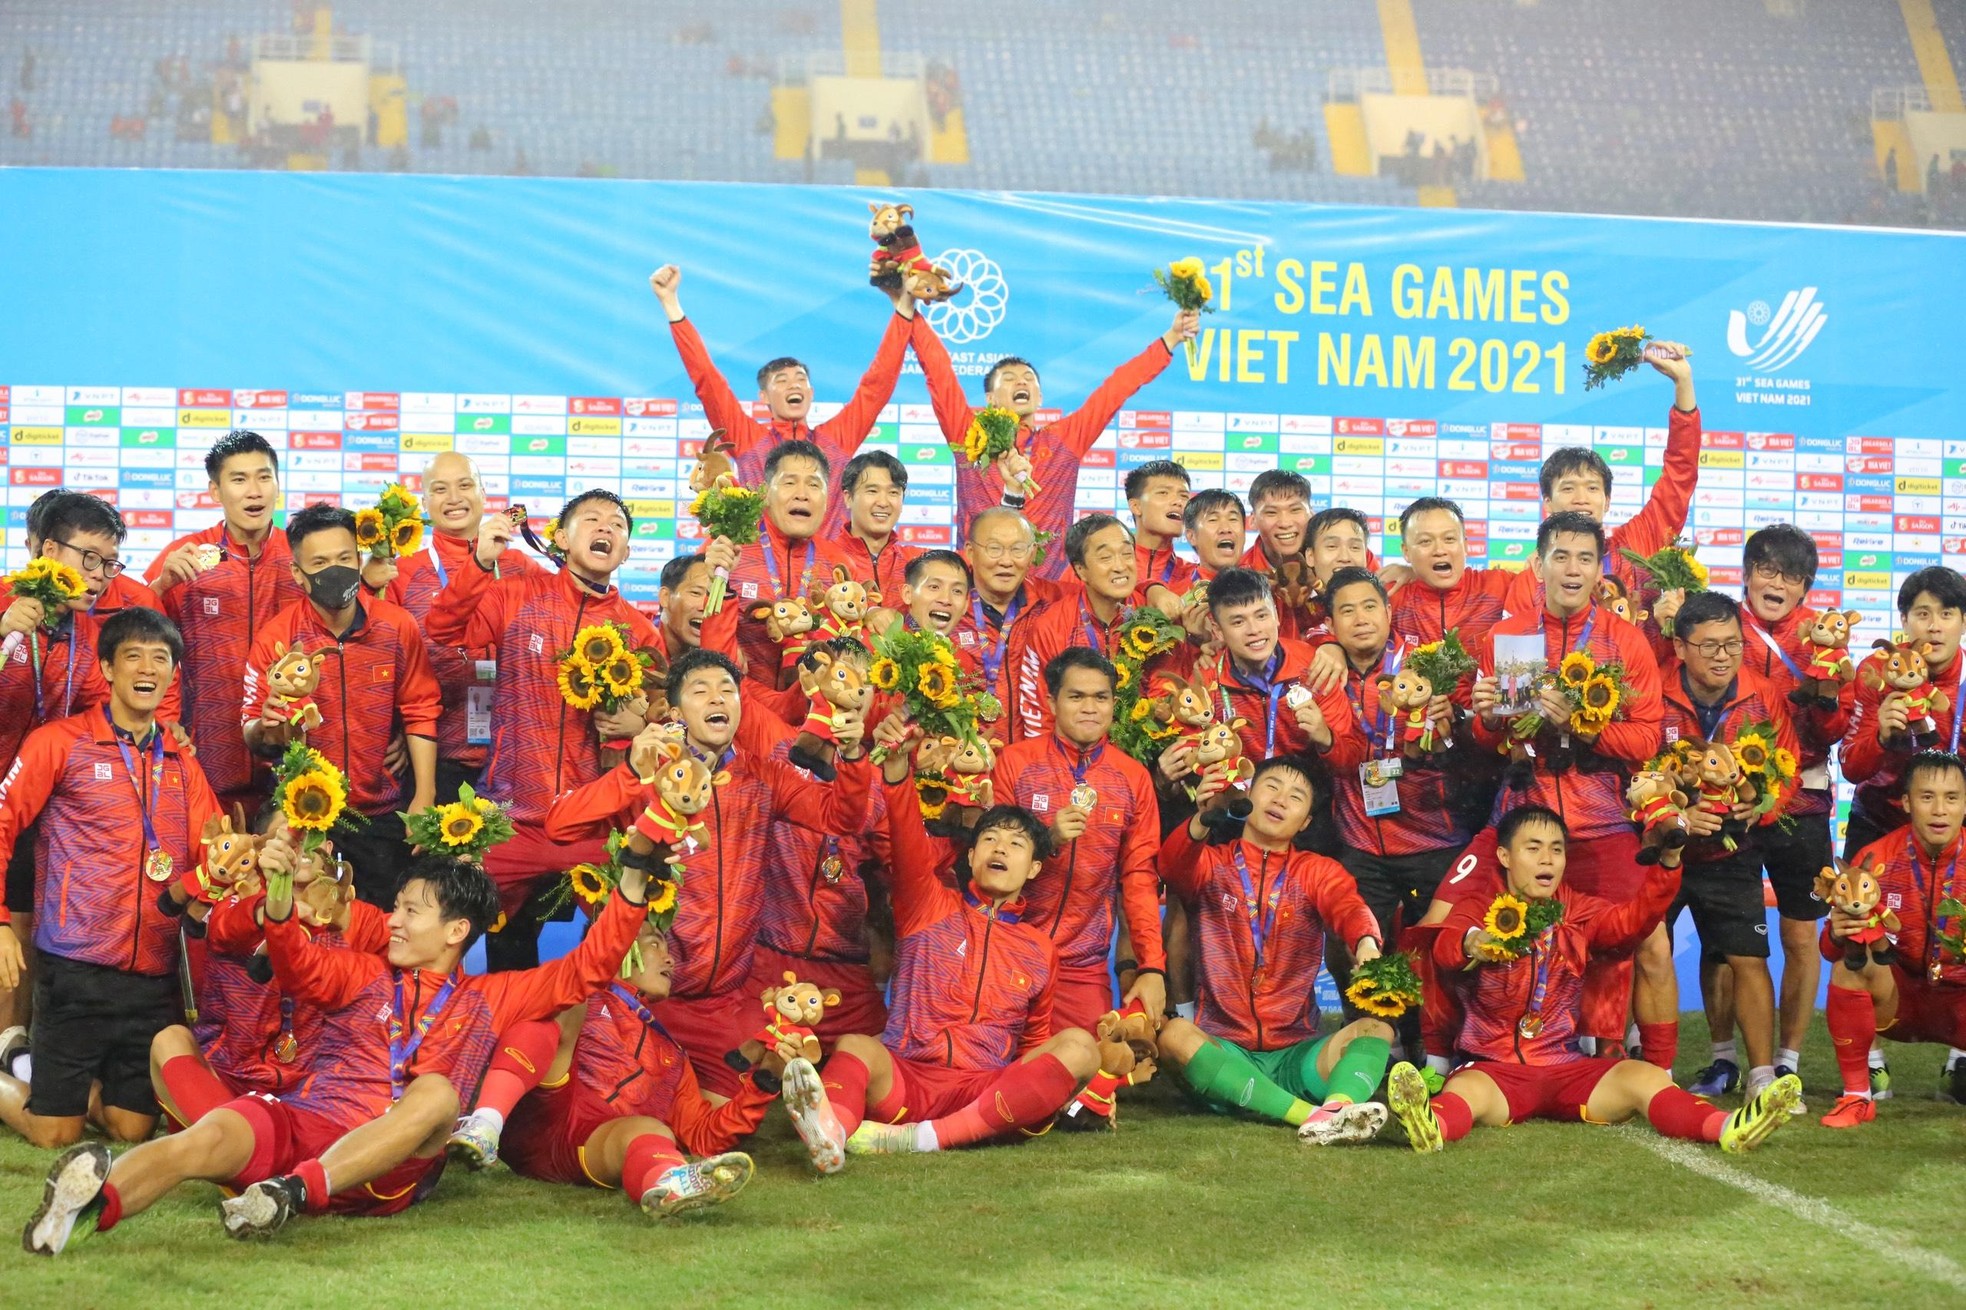 Khoảnh khắc tuyệt đẹp: tuyển thủ U23 Việt Nam công kênh HLV Park Hang-seo ăn mừng chiến thắng - Ảnh 10.